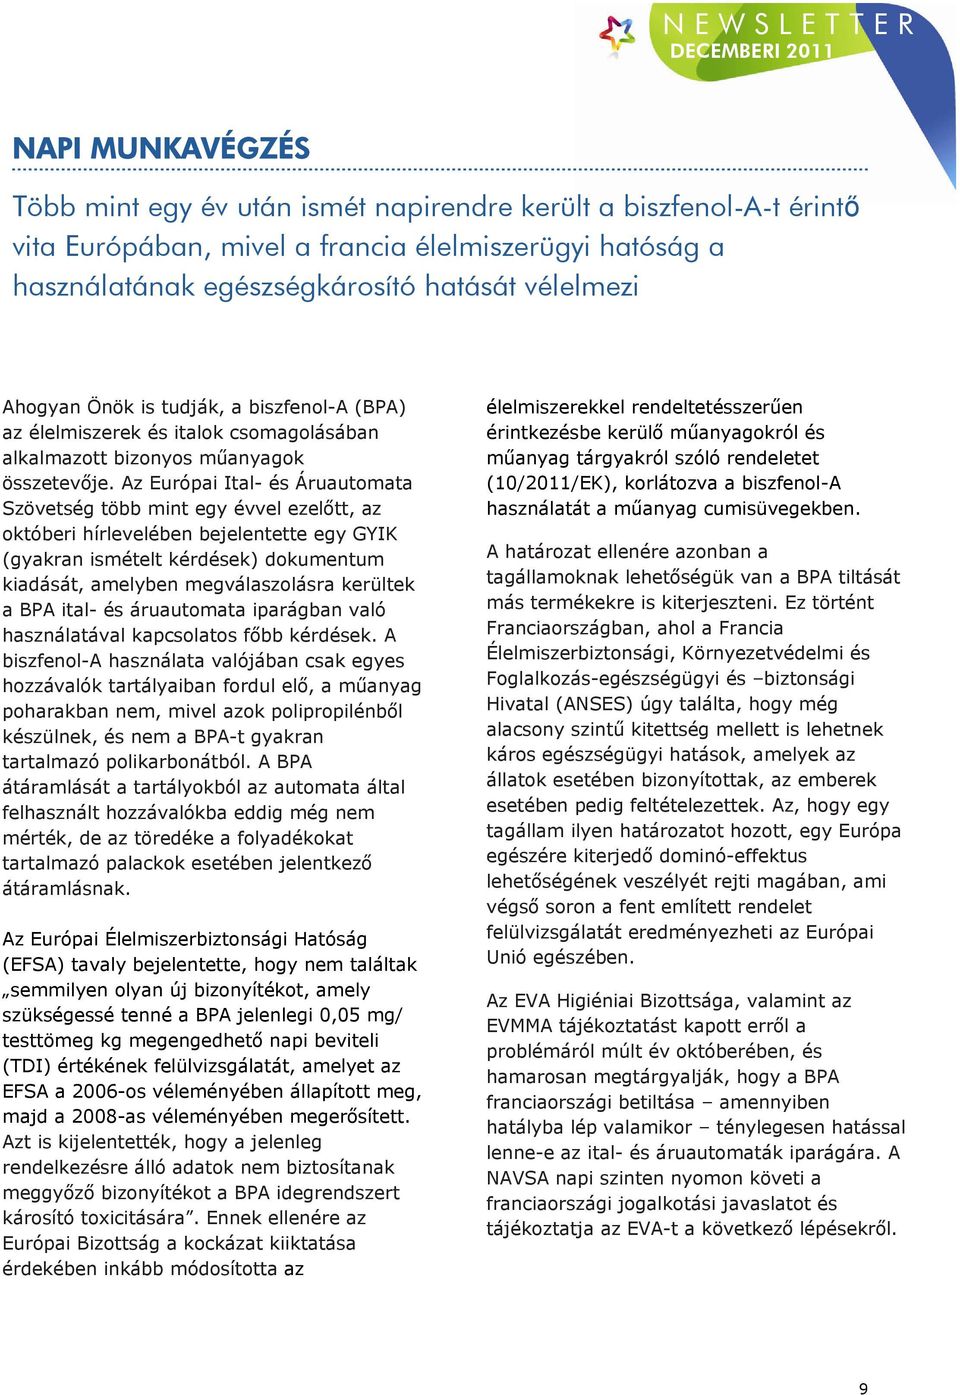 Az Európai Ital- és Áruautomata Szövetség több mint egy évvel ezelőtt, az októberi hírlevelében bejelentette egy GYIK (gyakran ismételt kérdések) dokumentum kiadását, amelyben megválaszolásra